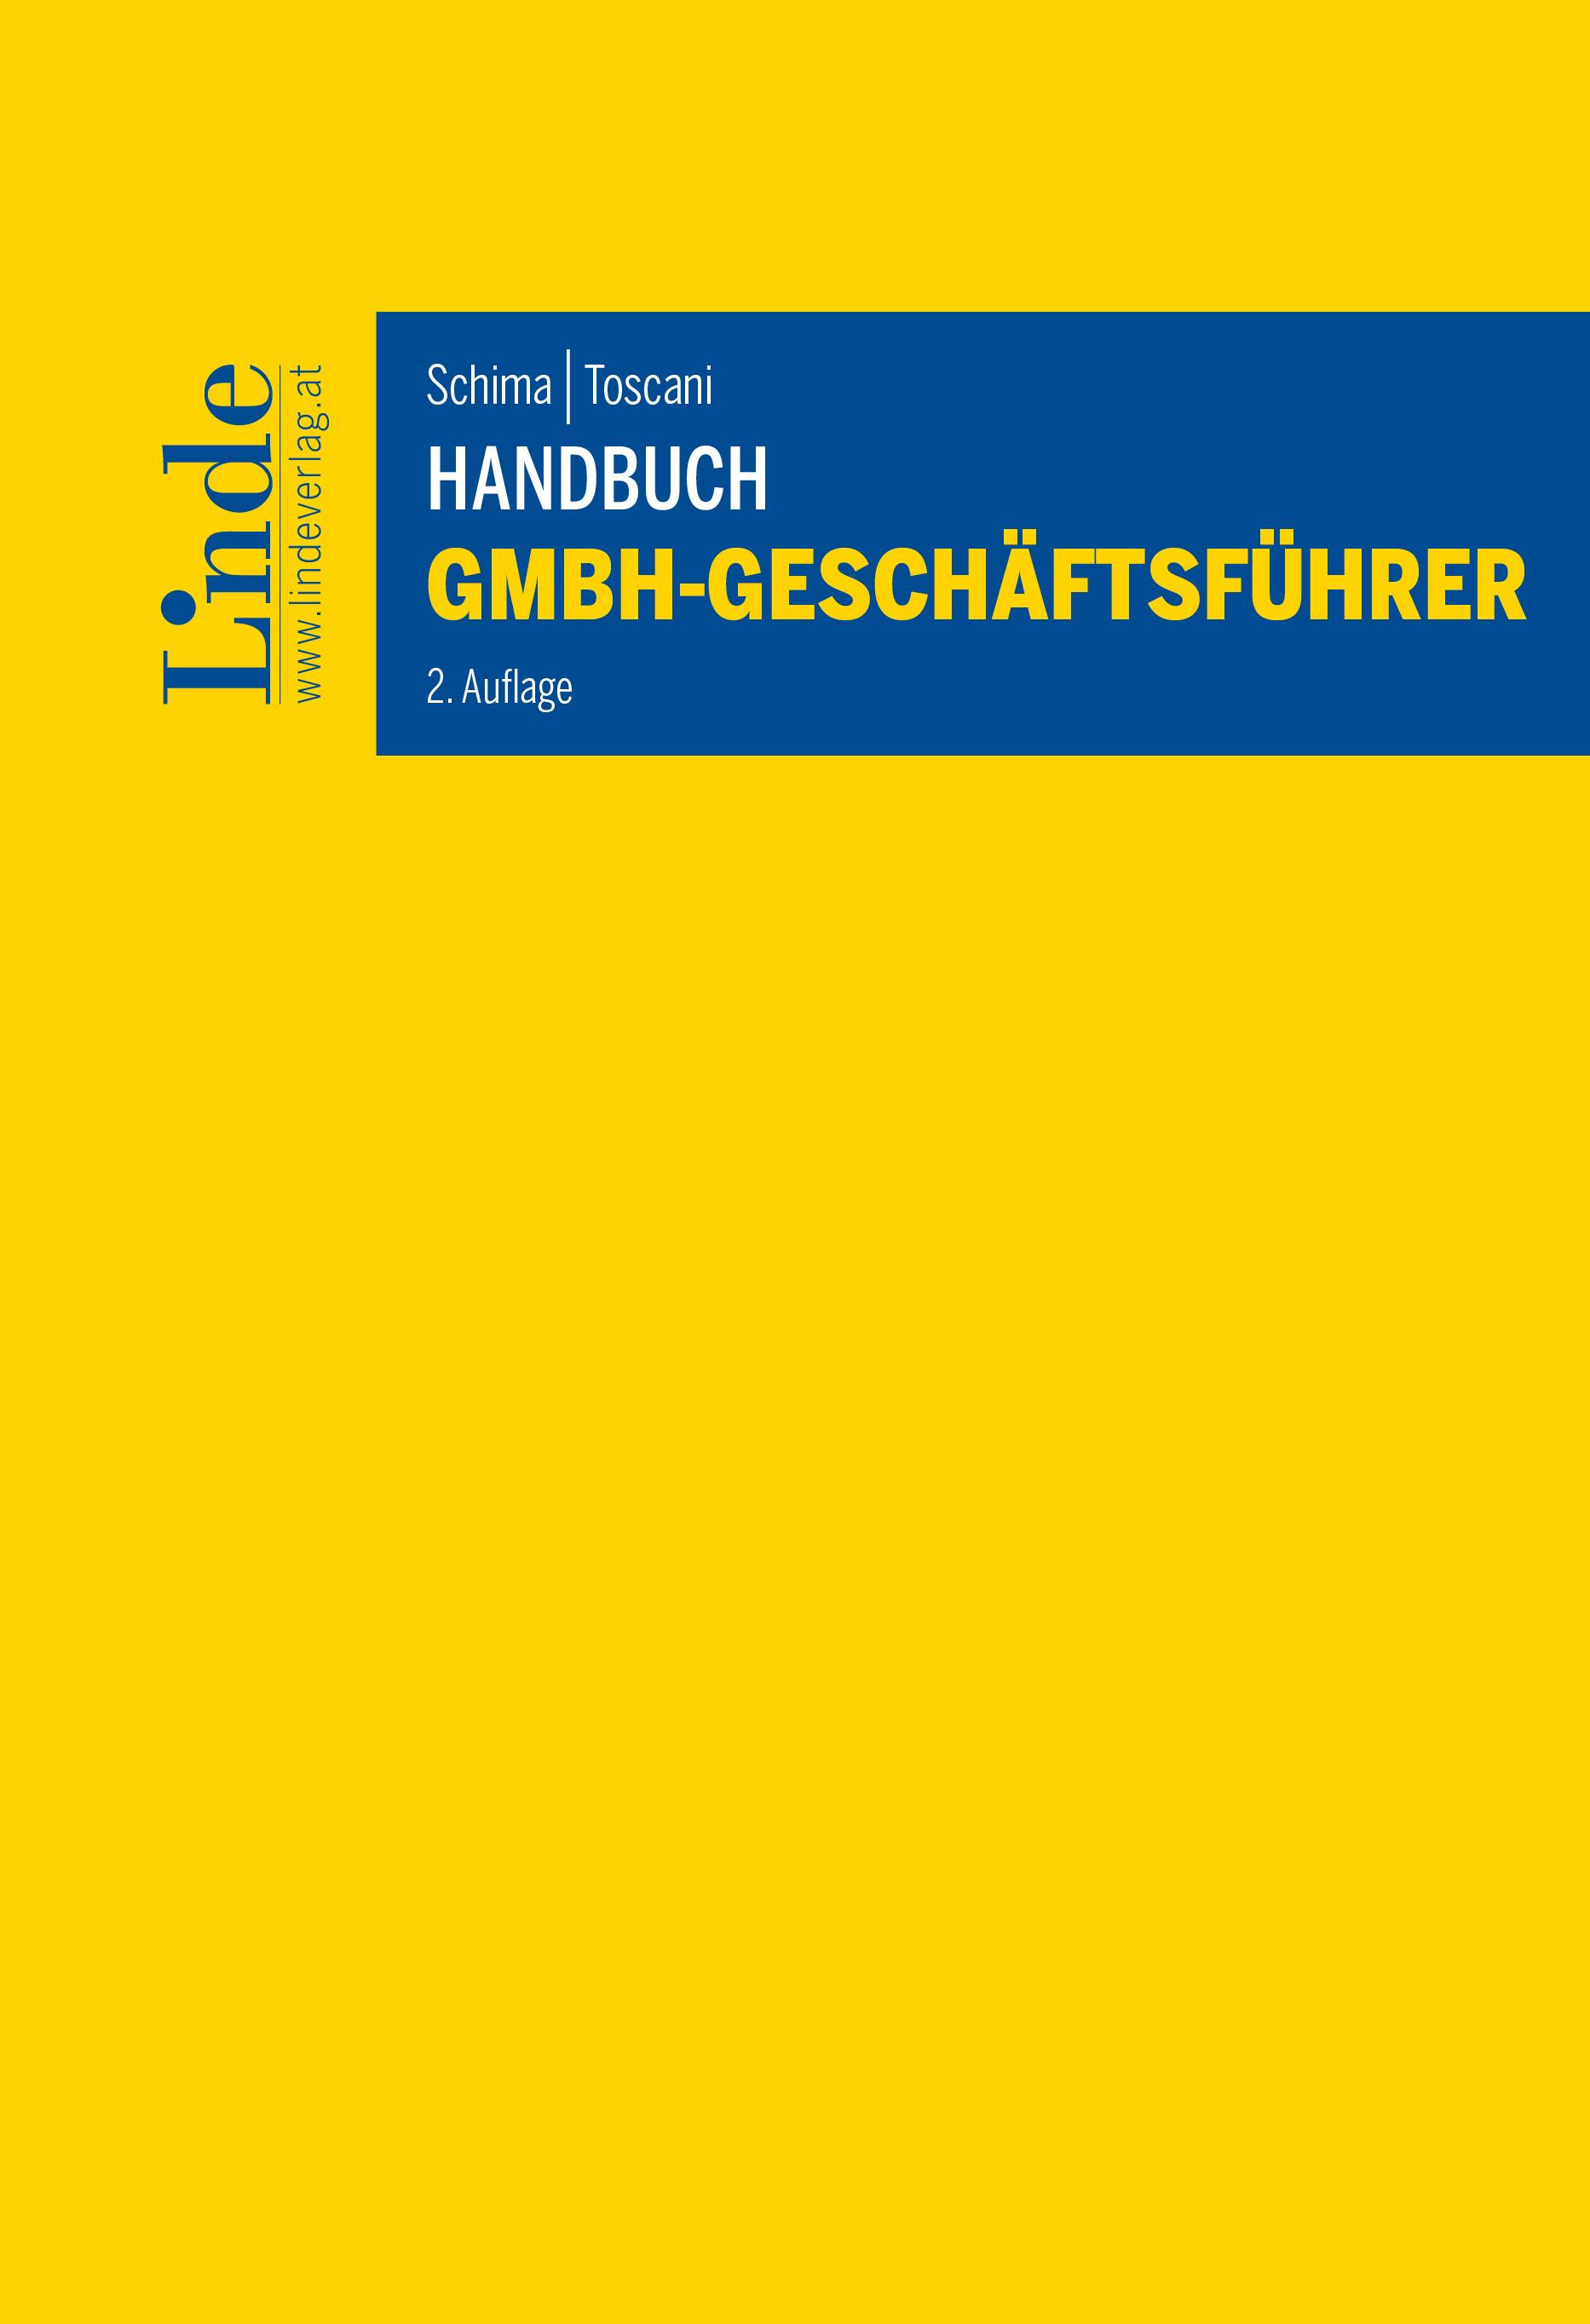 Schima | Toscani
Handbuch GmbH-Geschäftsführer